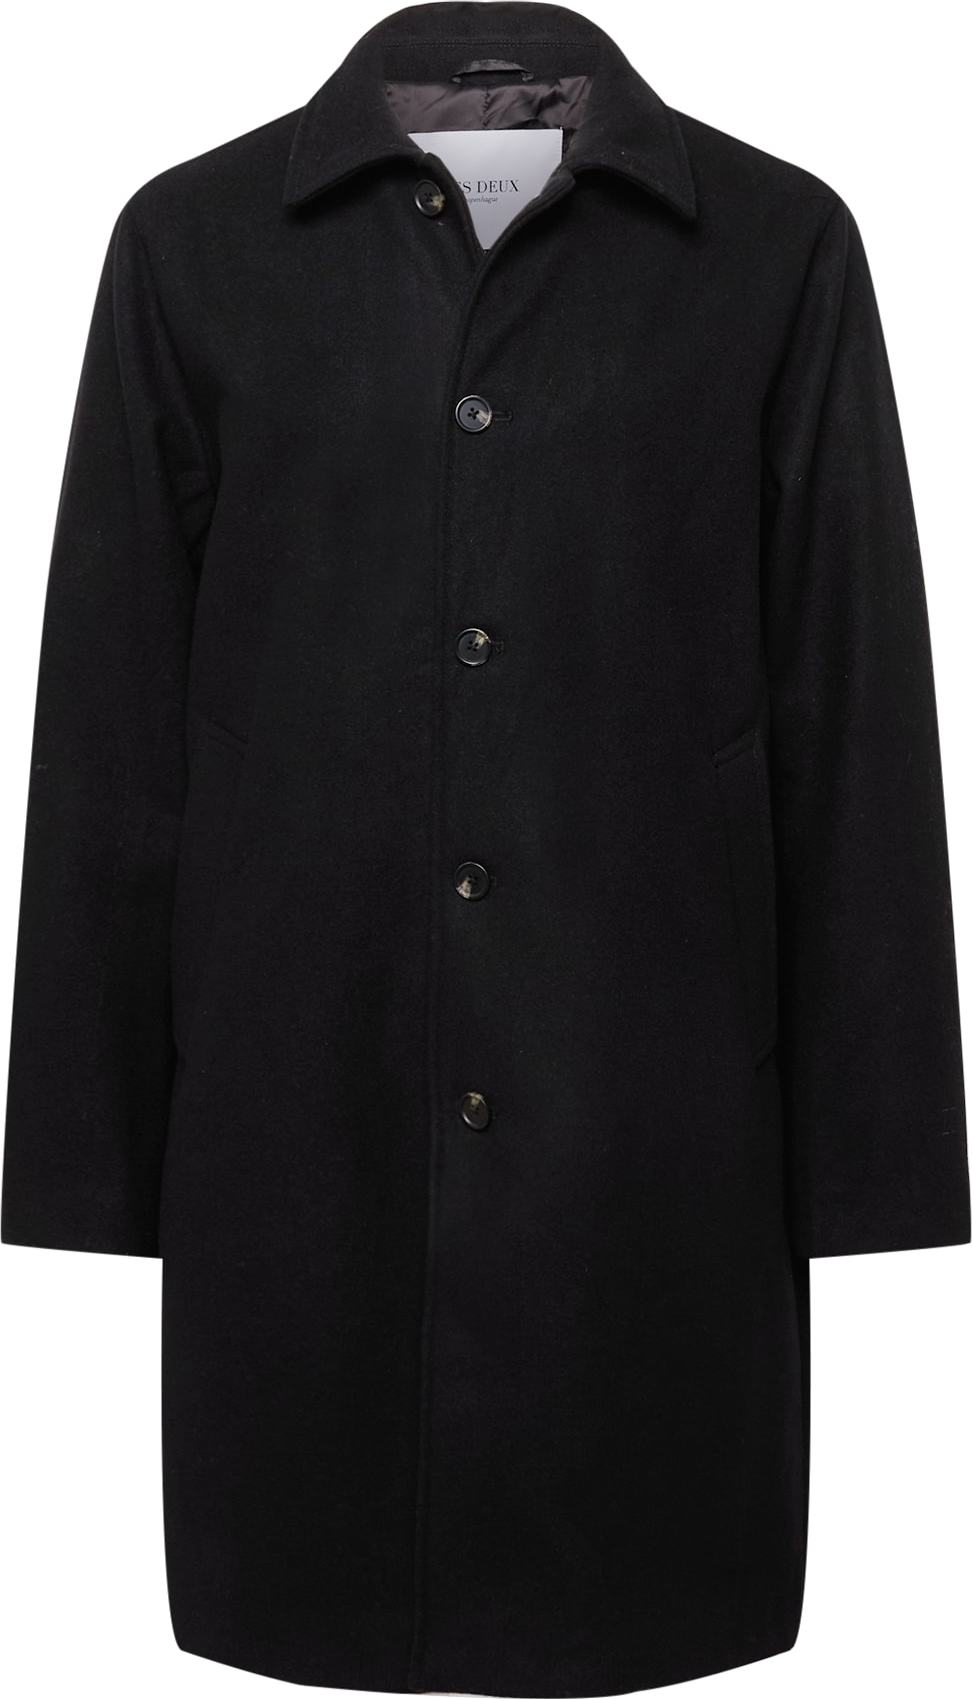 Les Deux Přechodný kabát 'Morgan' černá